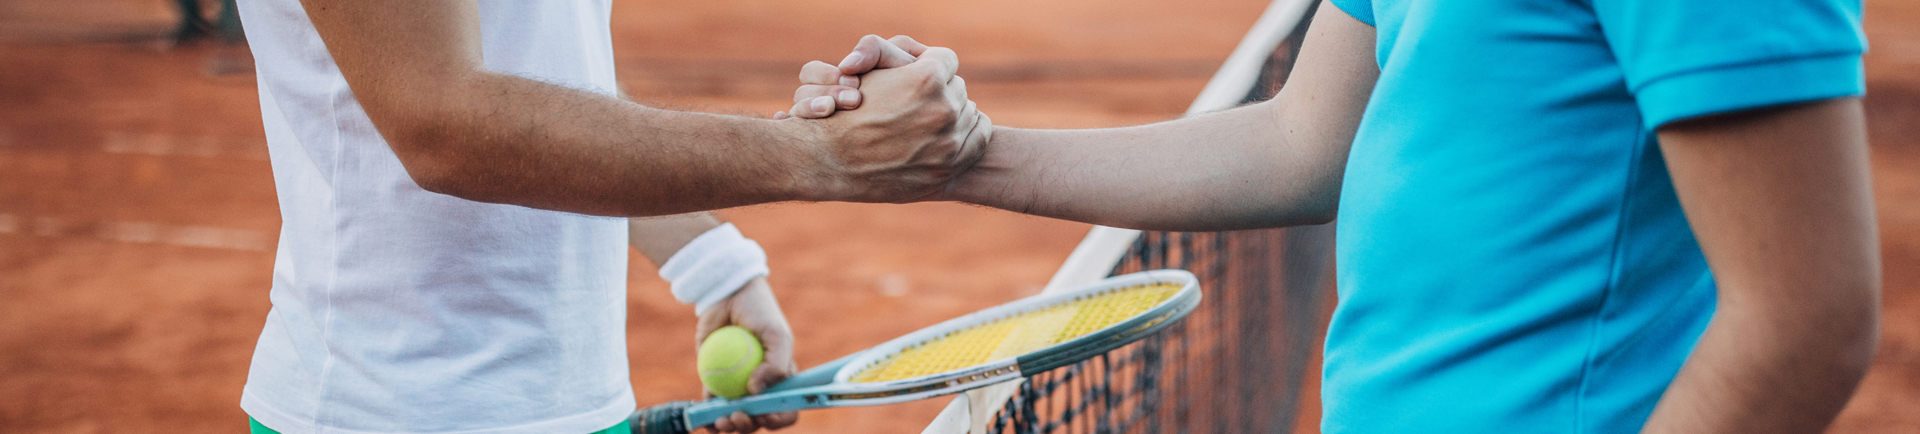 Aperto de mão entre dois jogadores de ténis